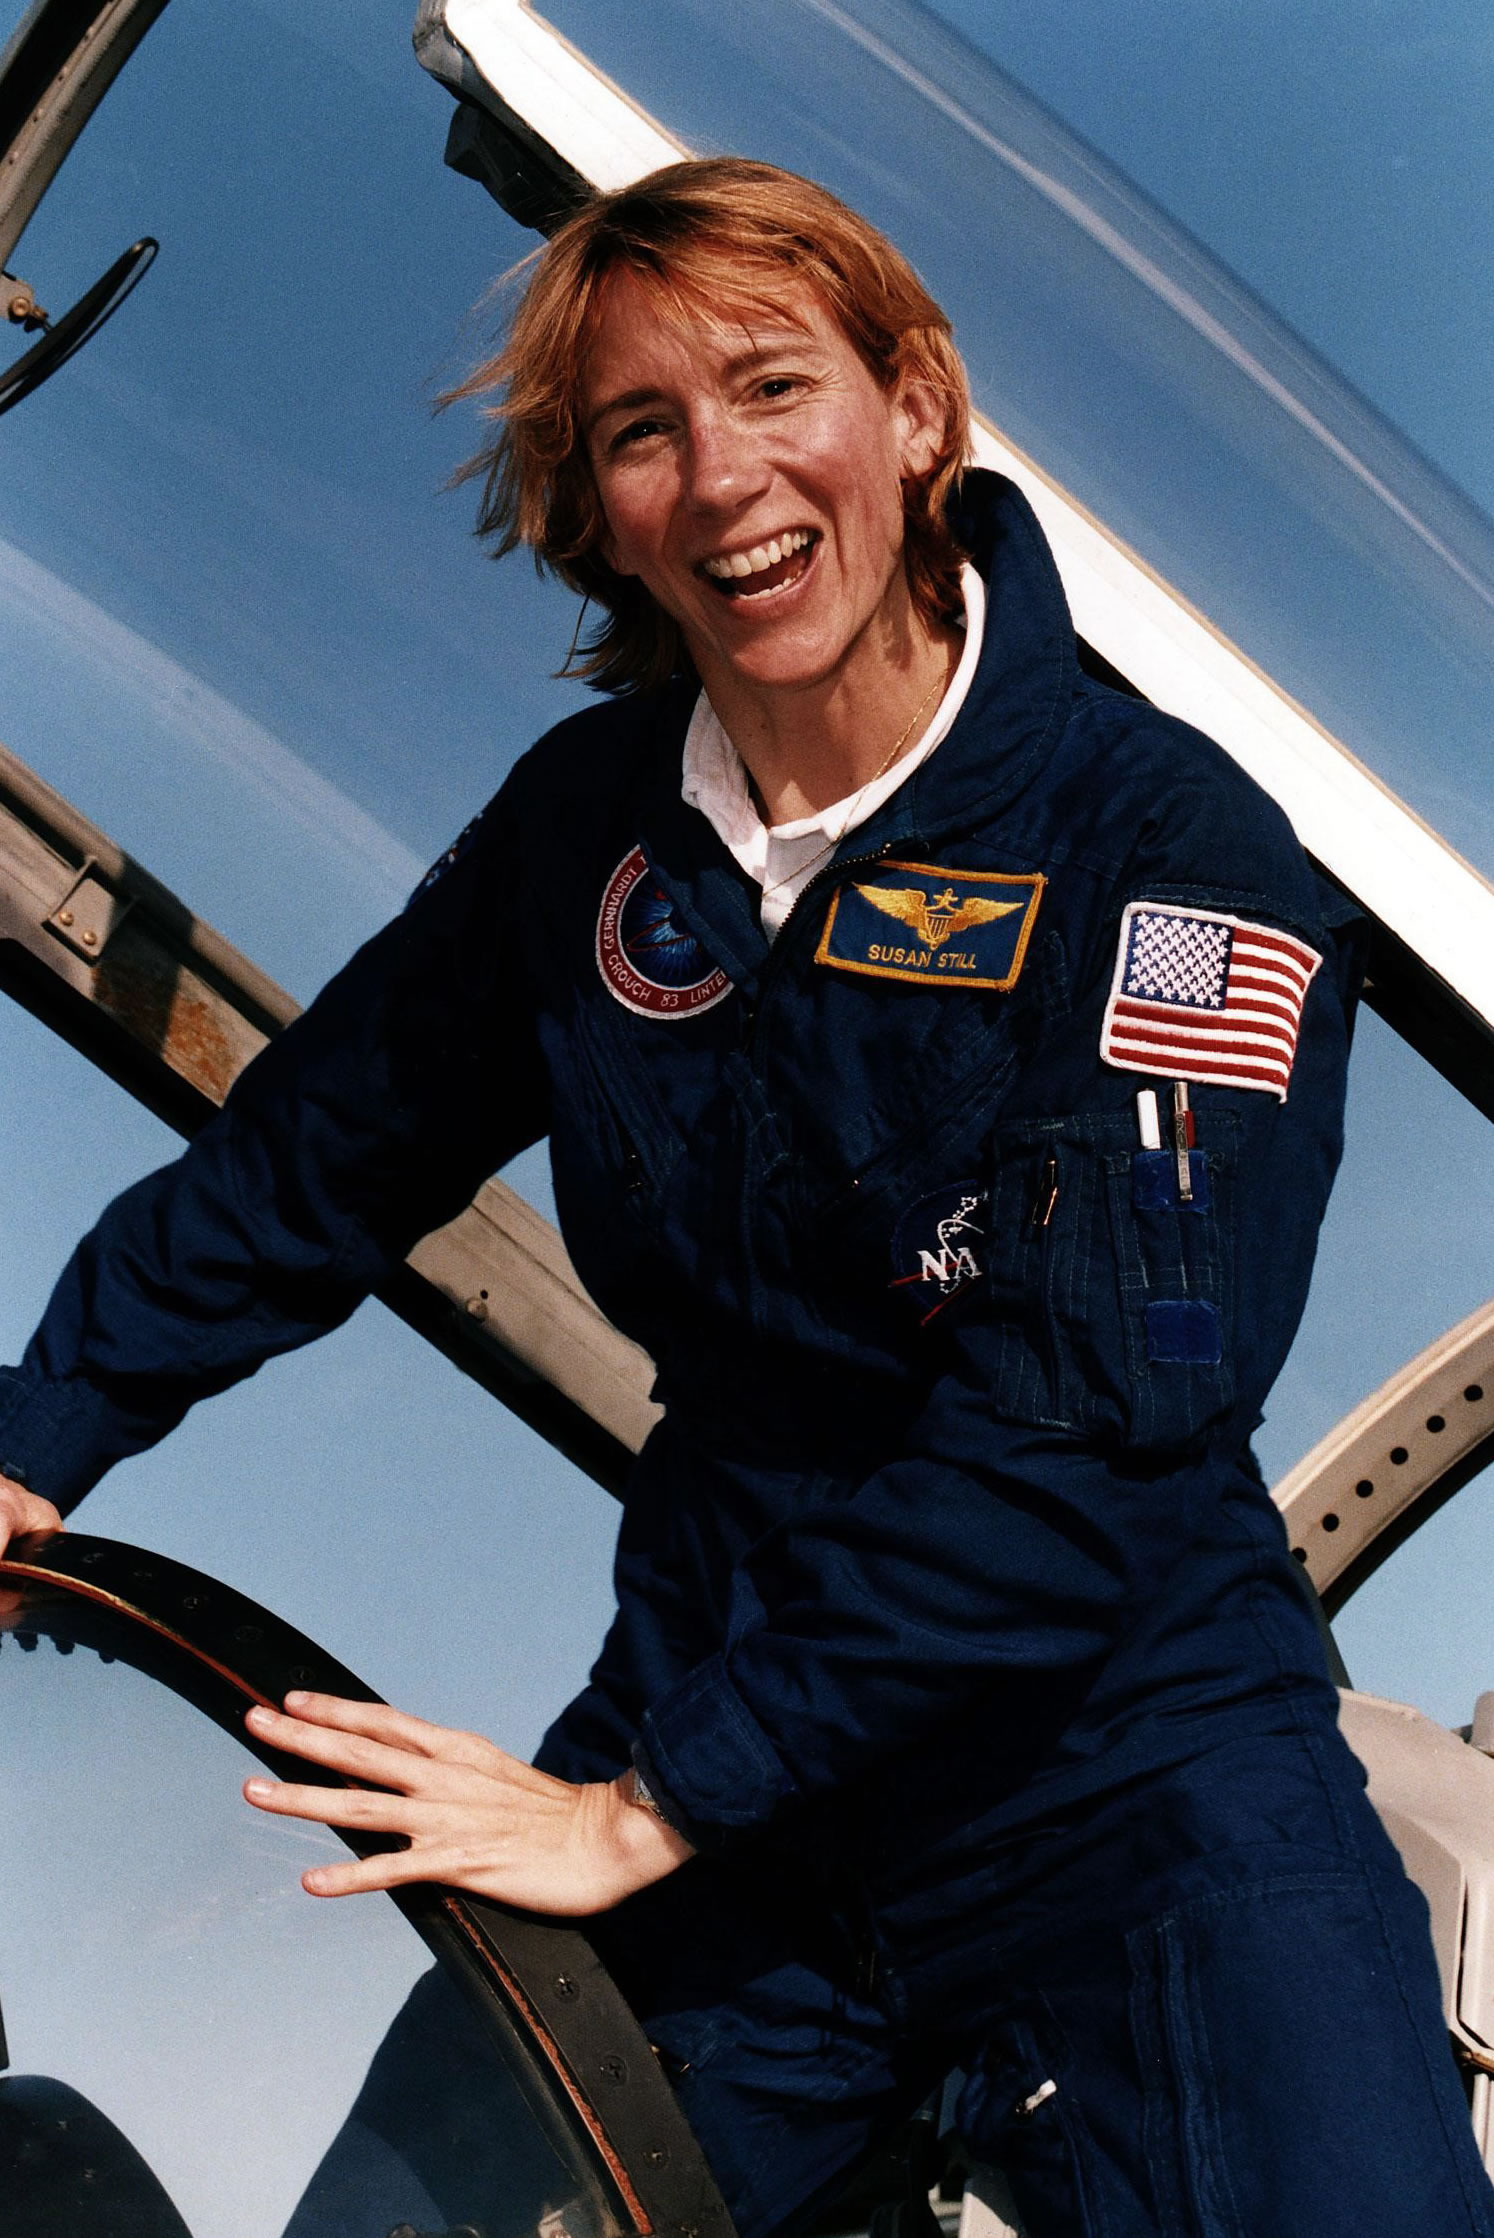 前美国宇航局宇航员苏珊·基尔兰在克服性别歧视后驾驶航天飞机安全抵达